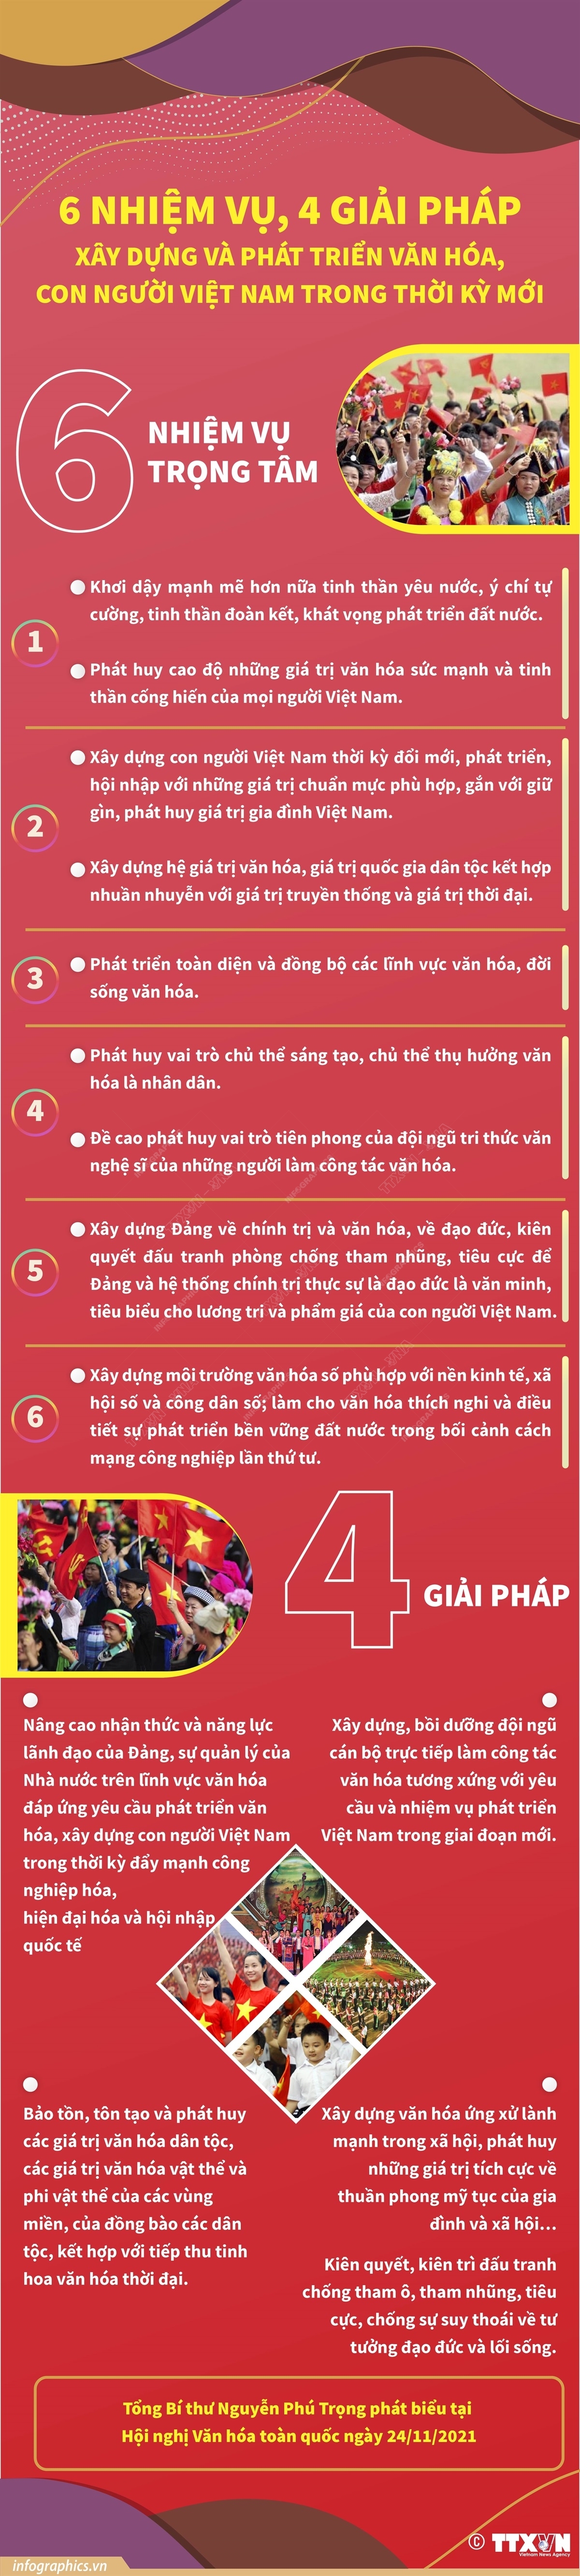 (DẪN NGUỒN)6 nhiệm vụ, 4 giải pháp để xây dựng và phát triển văn hóa, con người Việt Nam trong thời kỳ mới